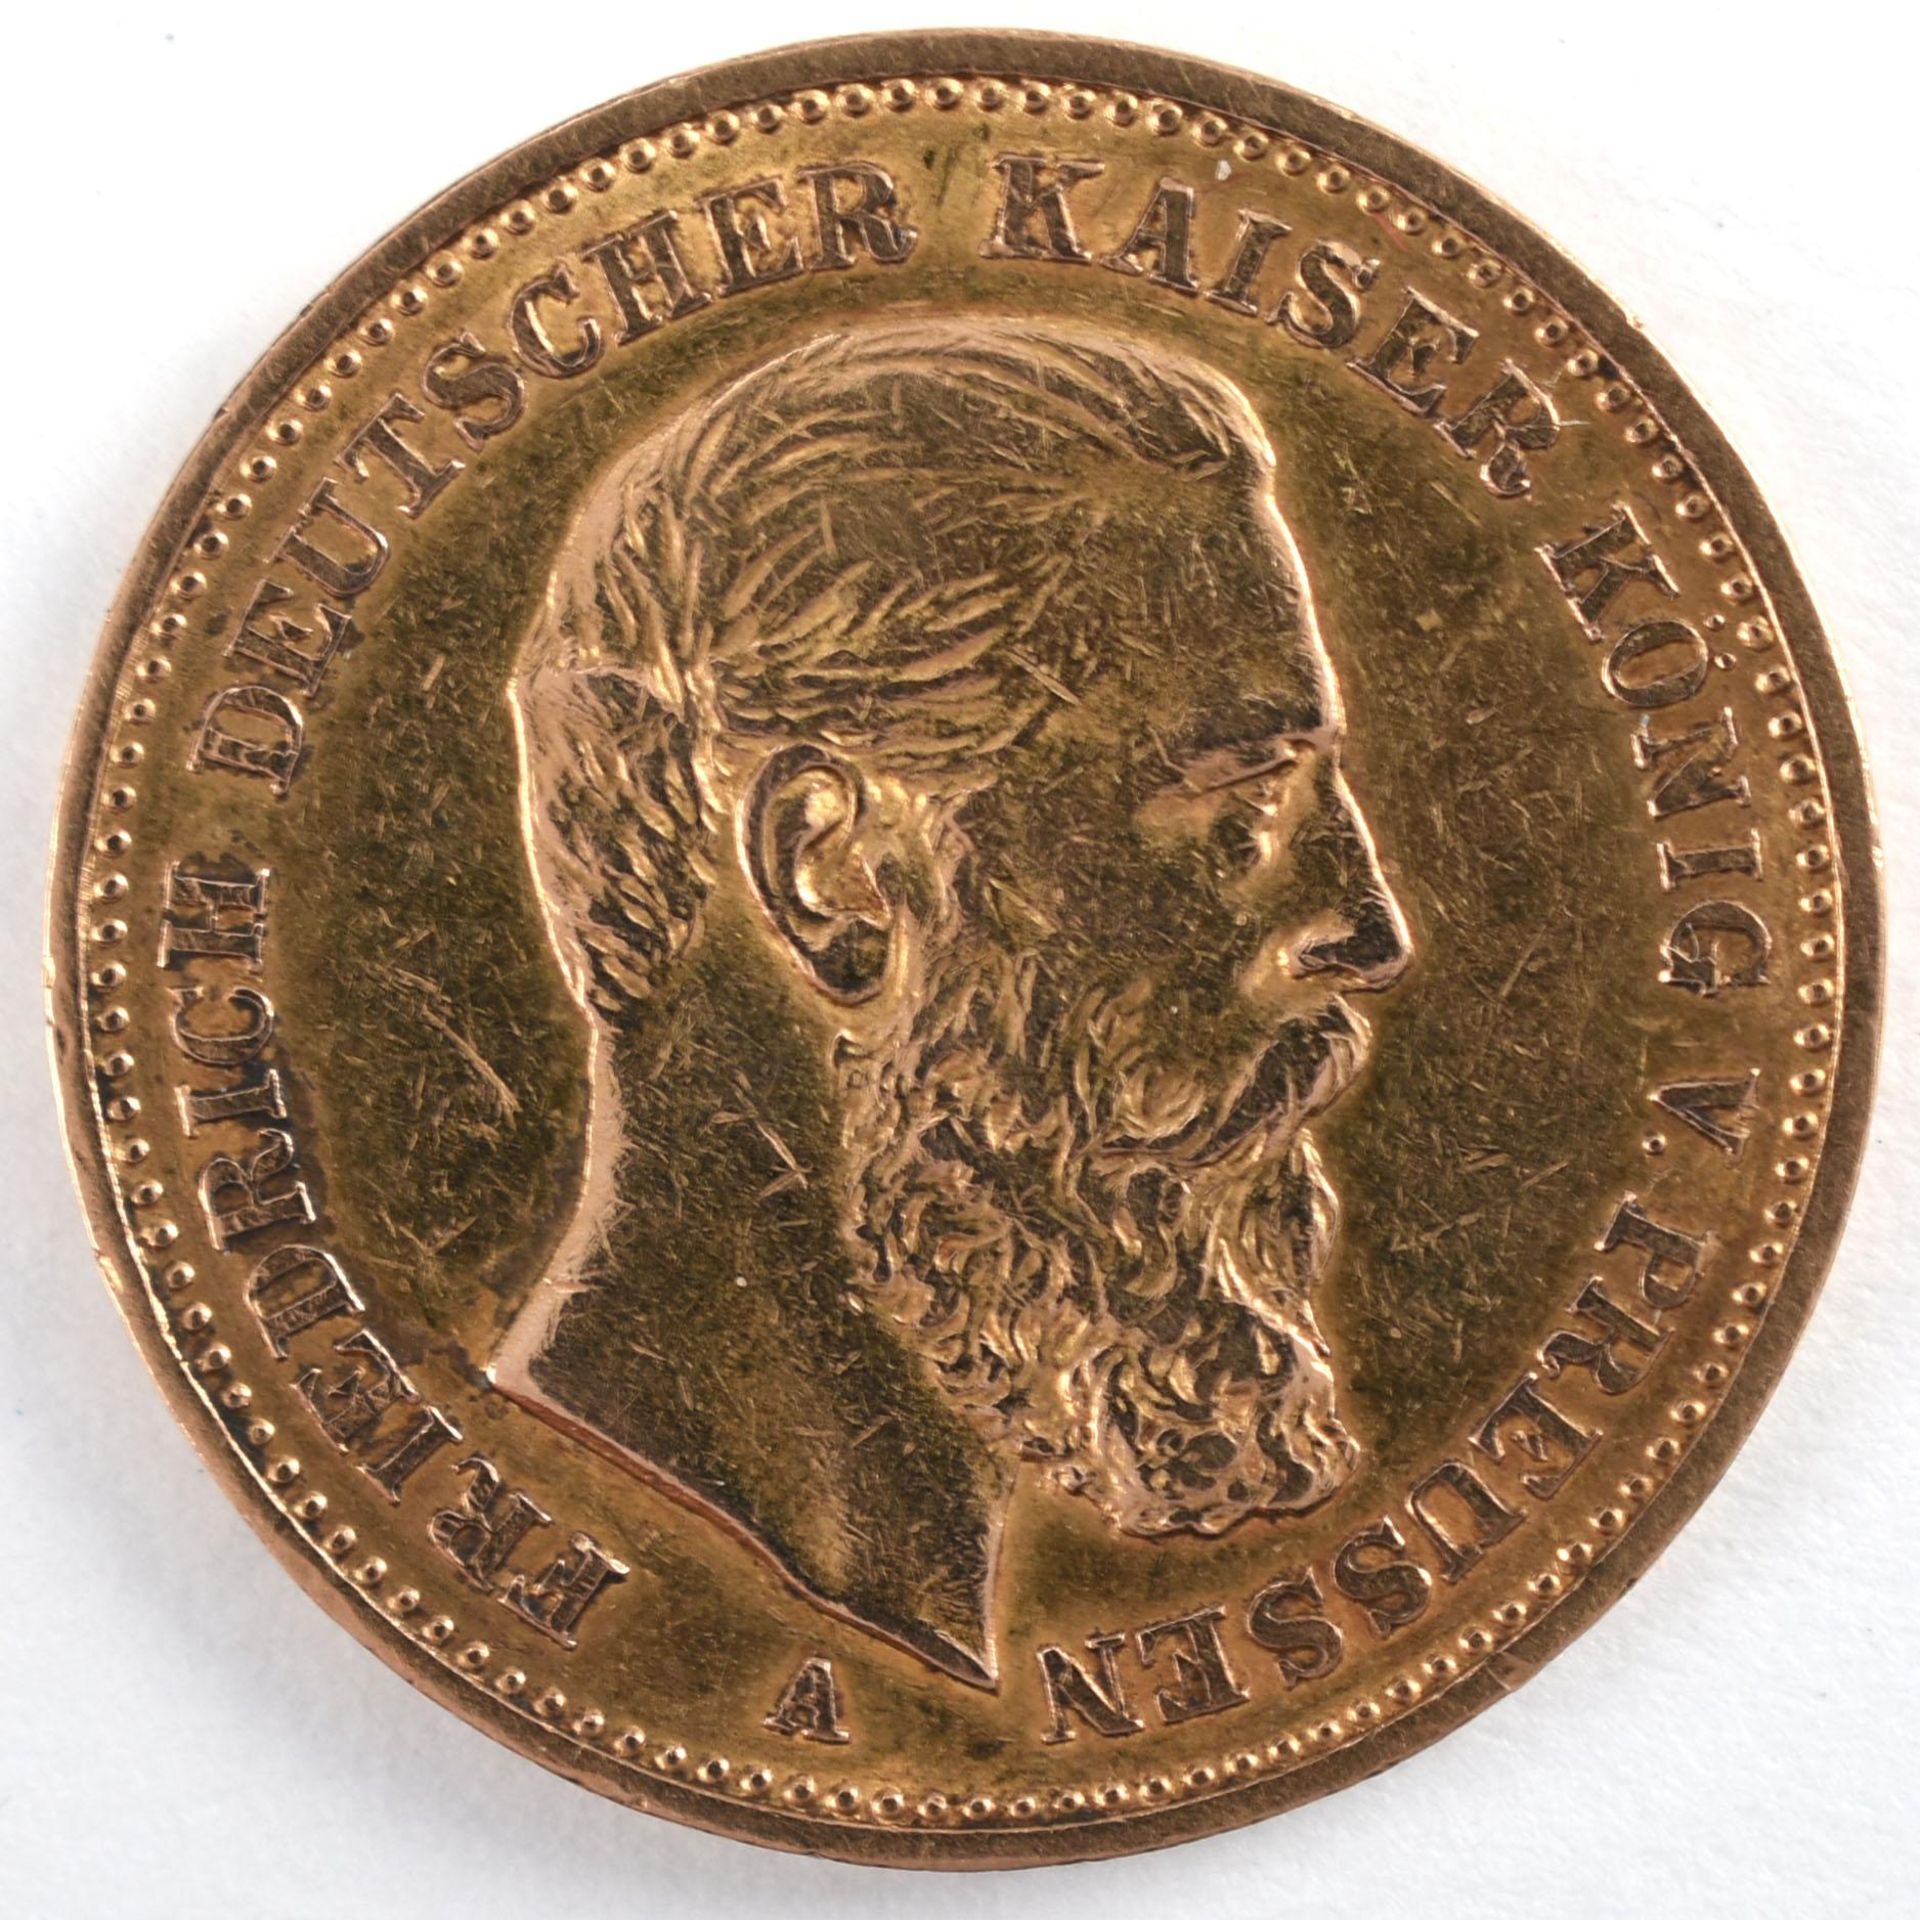 Goldmünze Preußen 1888 20 Mark in Gold, 900/1000, 7,96 g, D ca. 22,5 mm, av. Friedrich Deutscher - Image 2 of 3